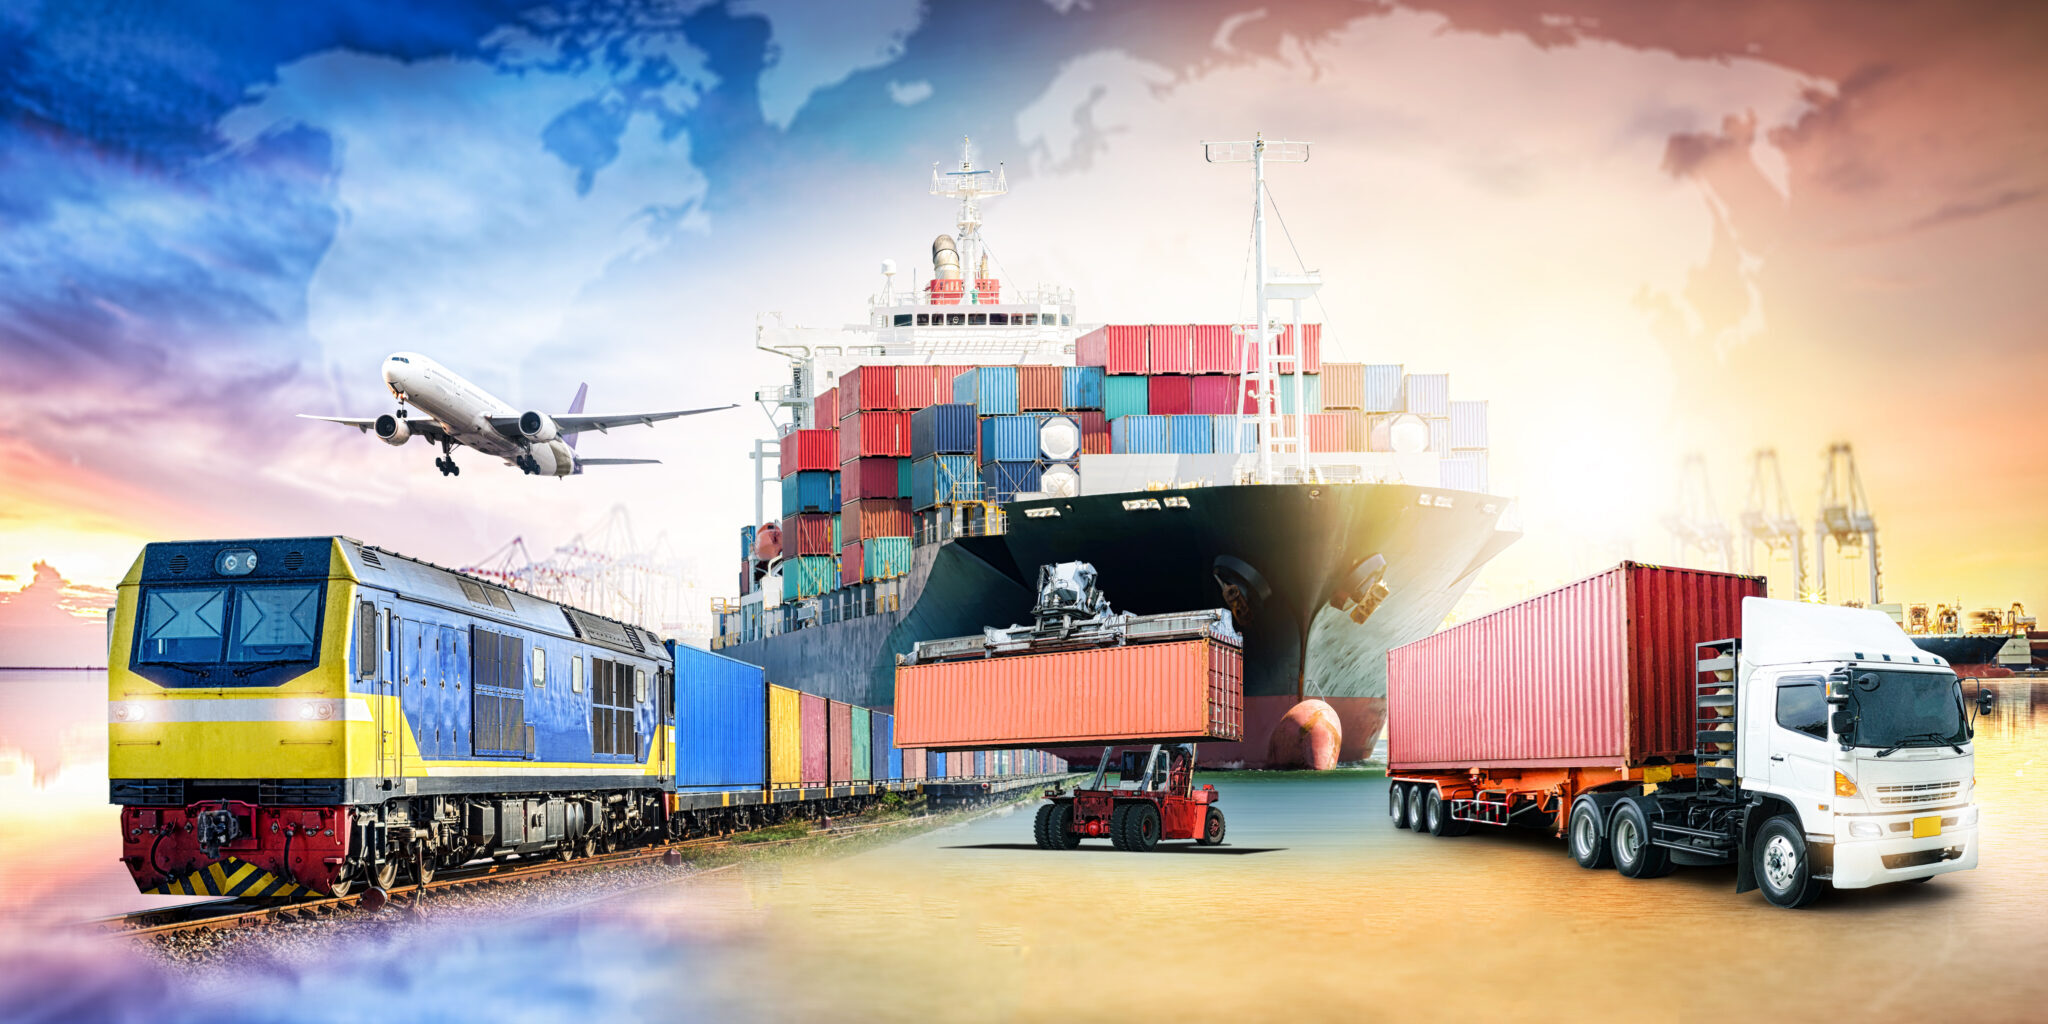 Перевозка грузов автомобильным транспортом связана со своим набором проблем, но с правильные меры, поставщики логистических услуг могут наслаждаться более плавной поездкой. DHL Logistics of Things